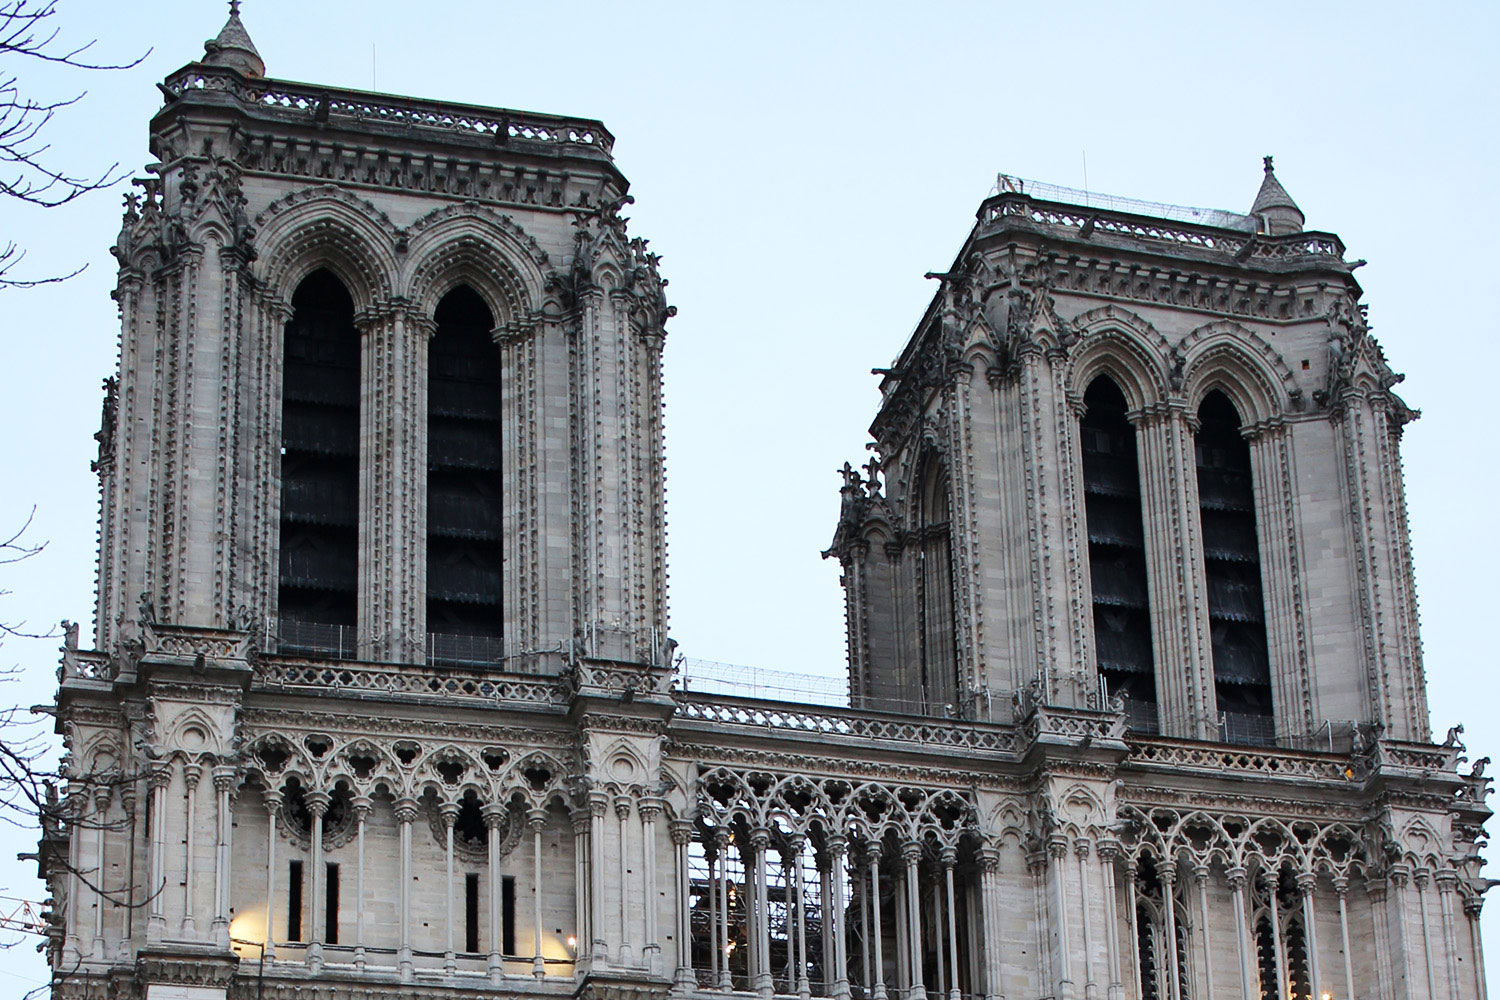 La construction de Notre-Dame de Paris a commencé en 1163. Son édification réalisée en l’honneur de la Vierge Marie dure plus de 200 ans. Depuis cette époque, sa façade n’a que très peu changé © Globe Reporters